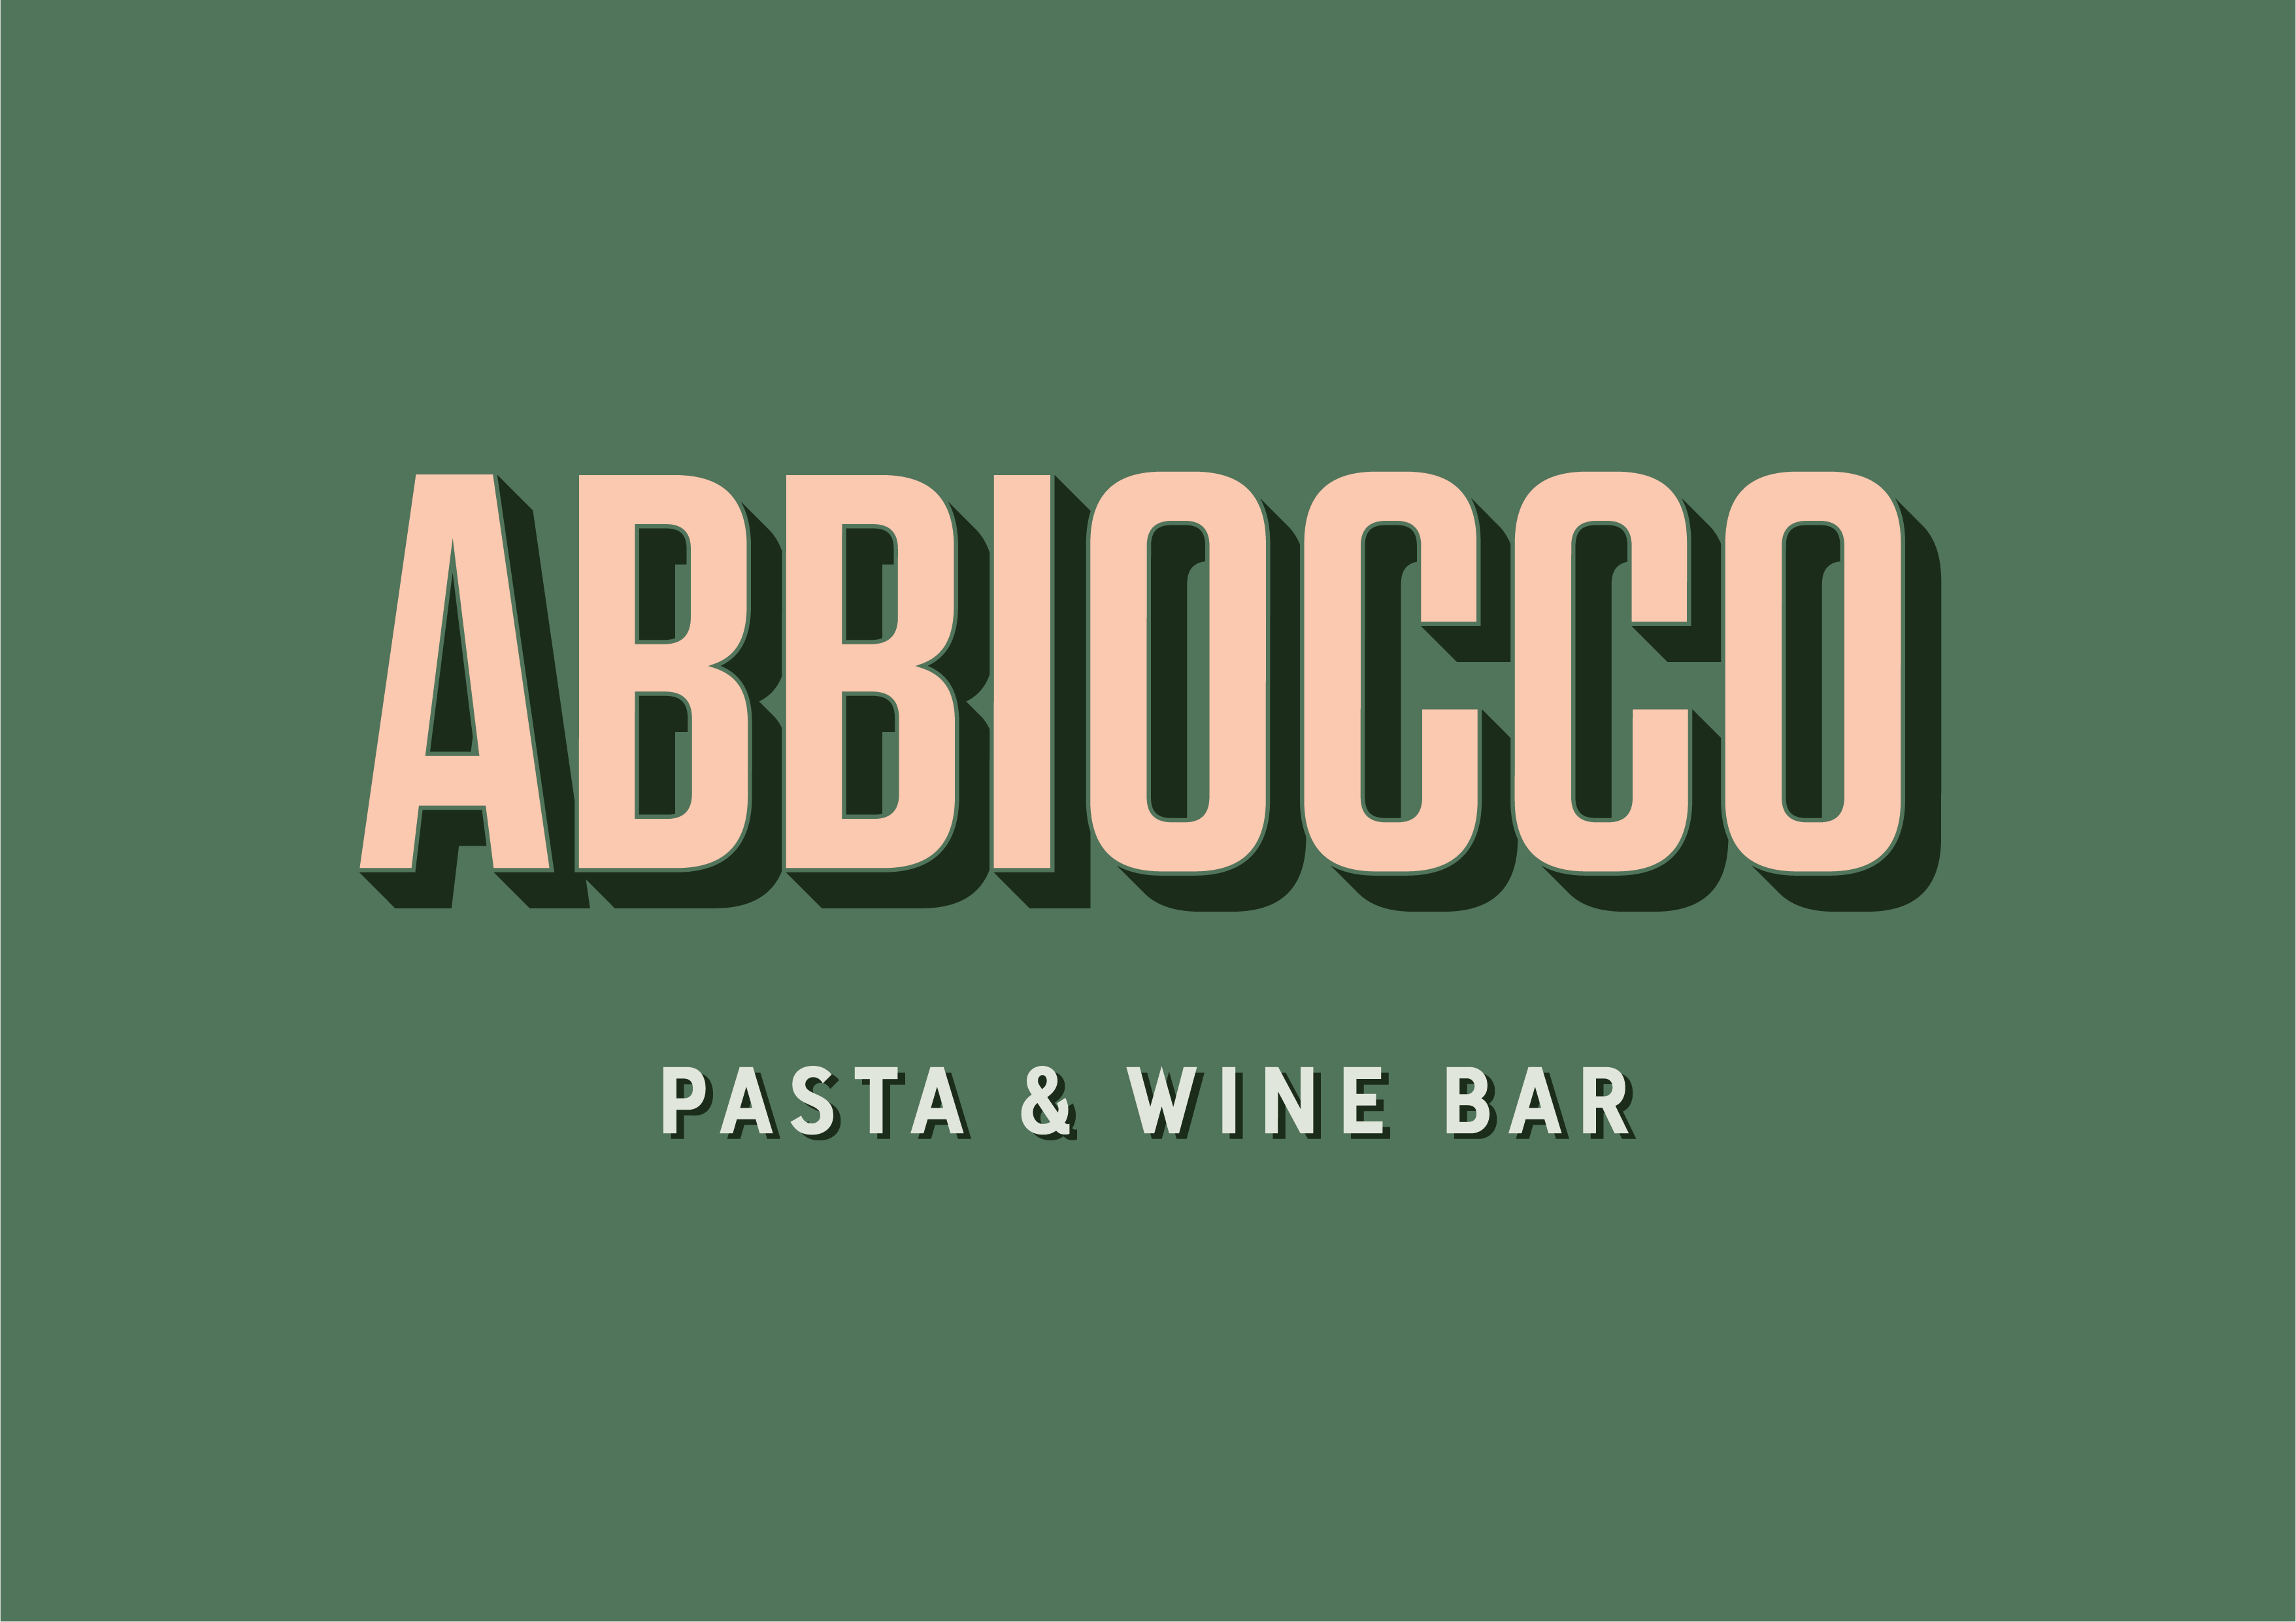 Abbiocco Pasta & Wine Bar